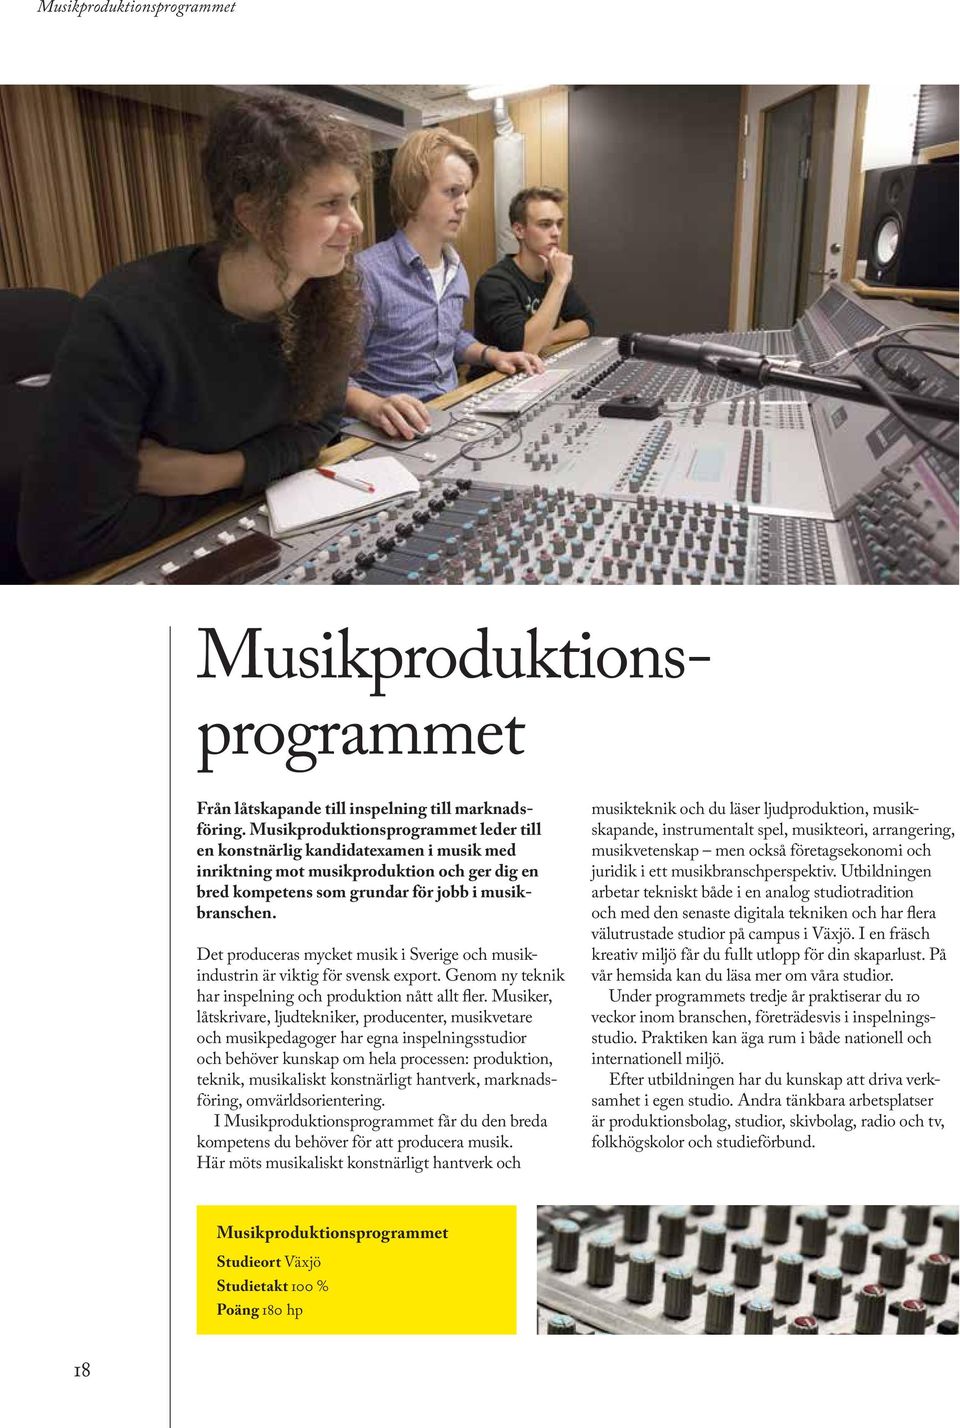 Det produceras mycket musik i Sverige och musikindustrin är viktig för svensk export. Genom ny teknik har inspelning och produktion nått allt fler.